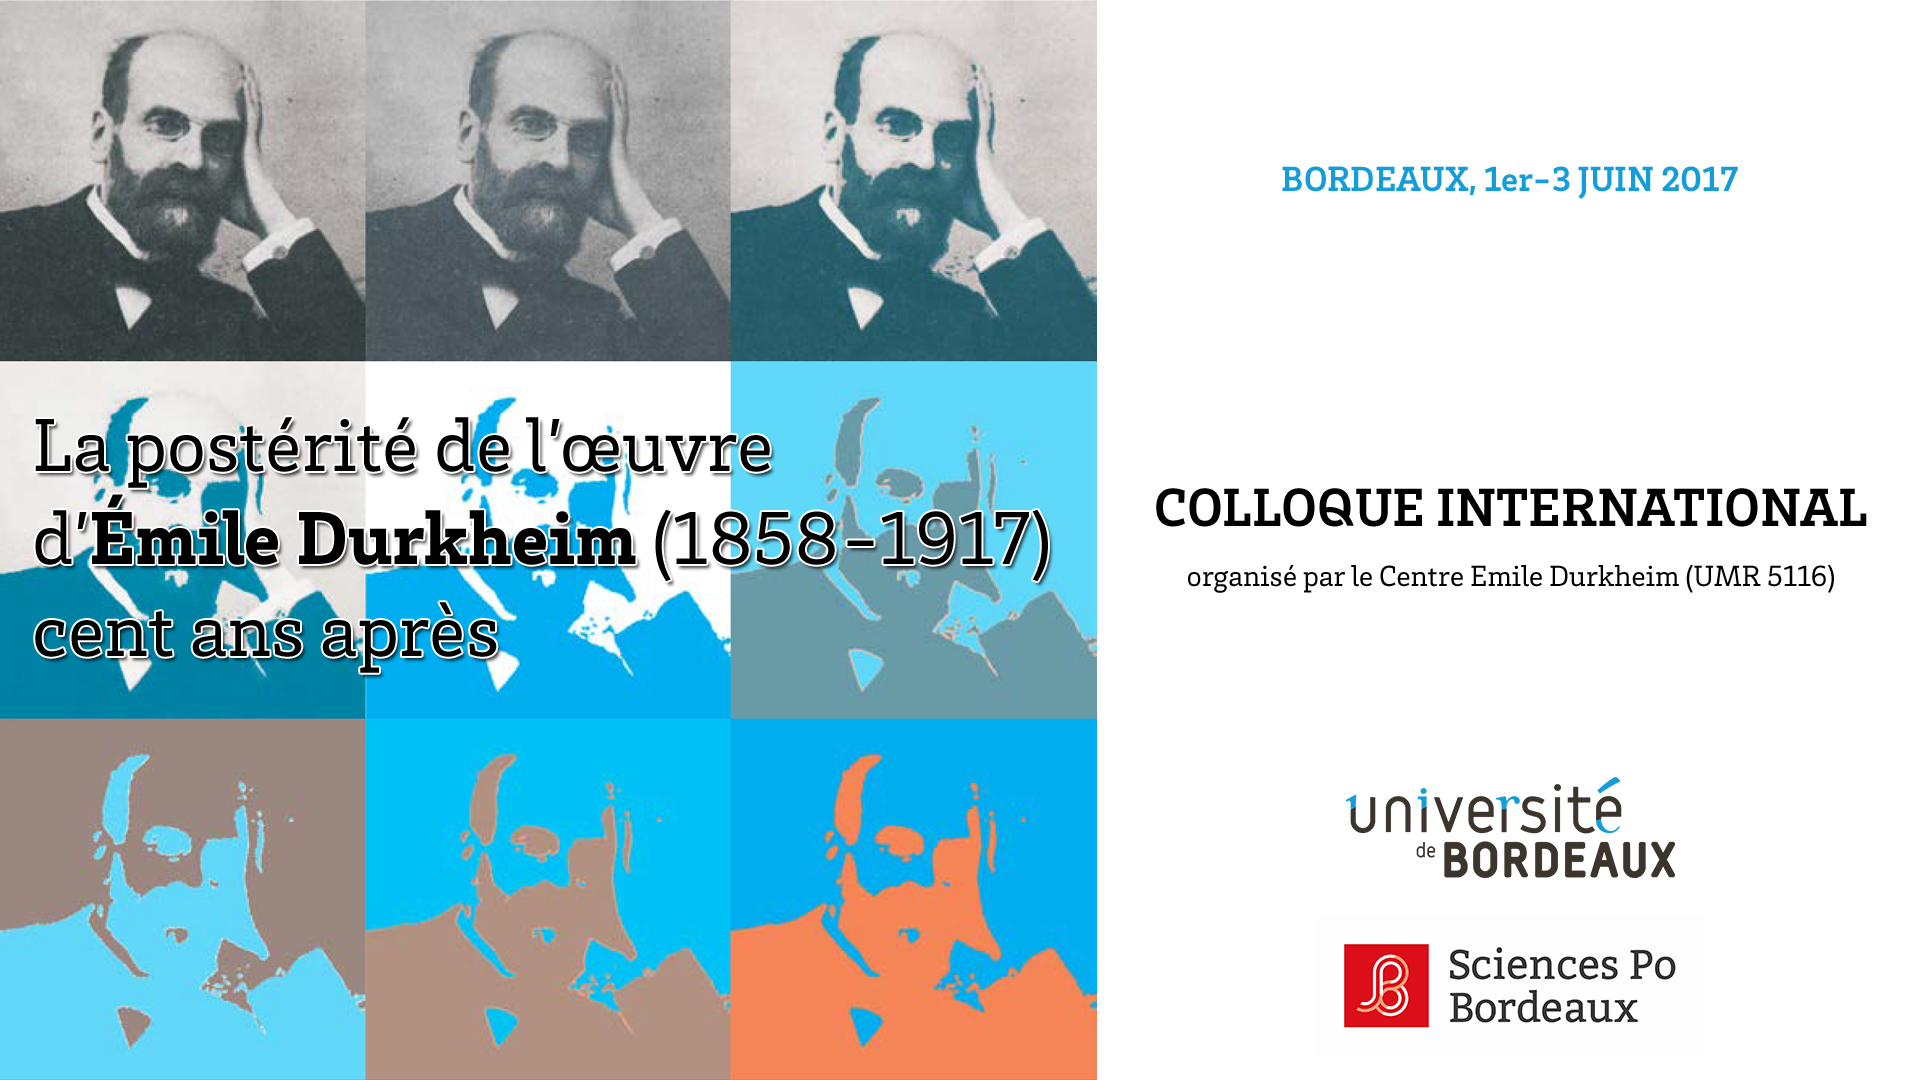 Solidarité et institutions : deux apports fondamentaux de Durkheim à la sociologie économique